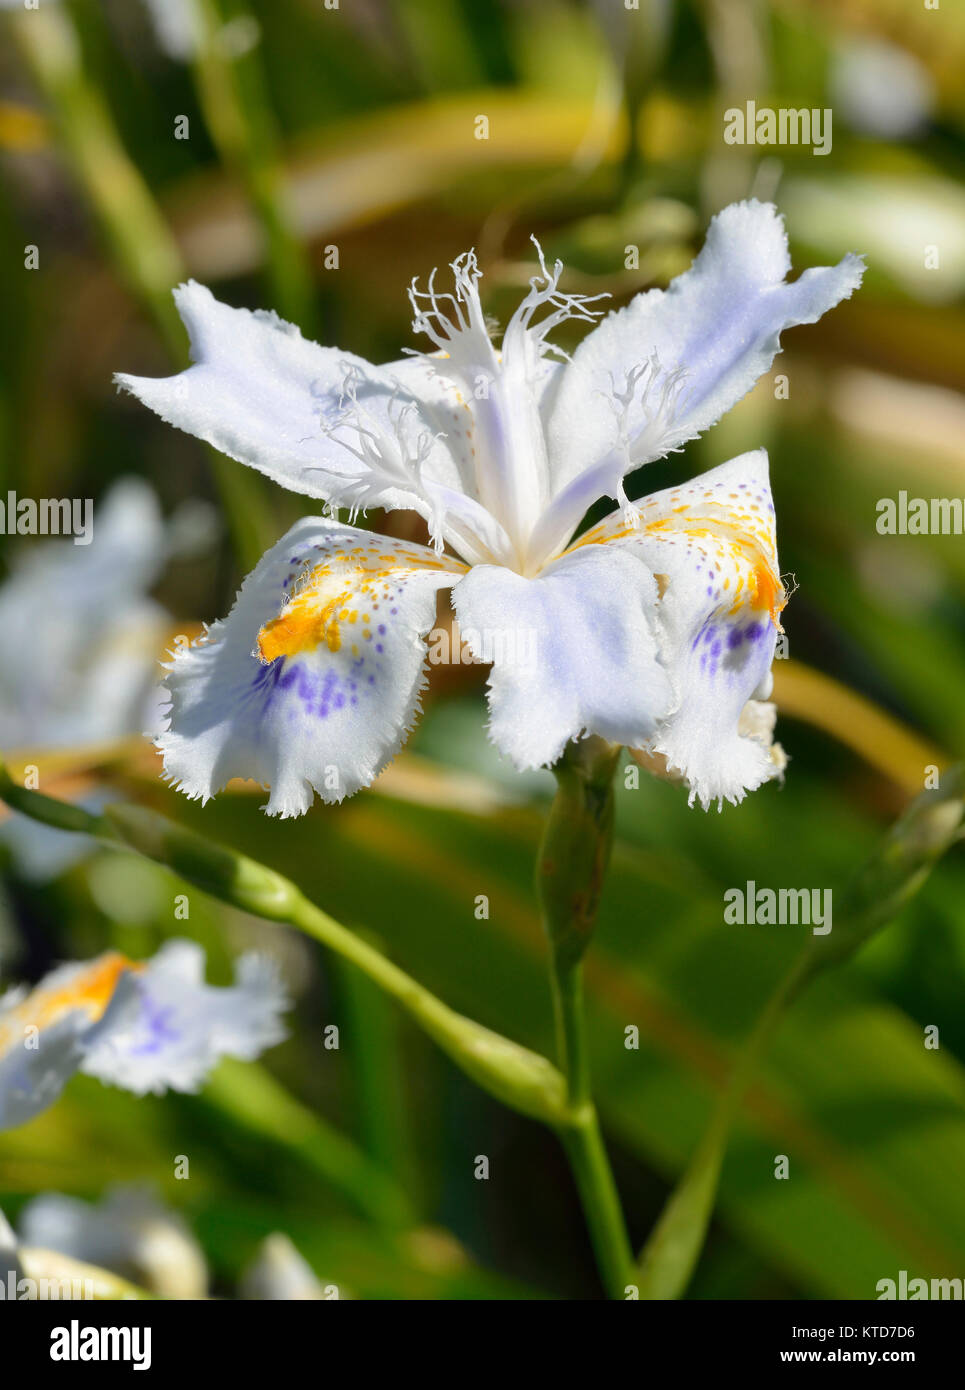 Iris japonais à franges blanches, Iris japonica de variété inconnue, fleur  avec un fond flou de feuilles Photo Stock - Alamy